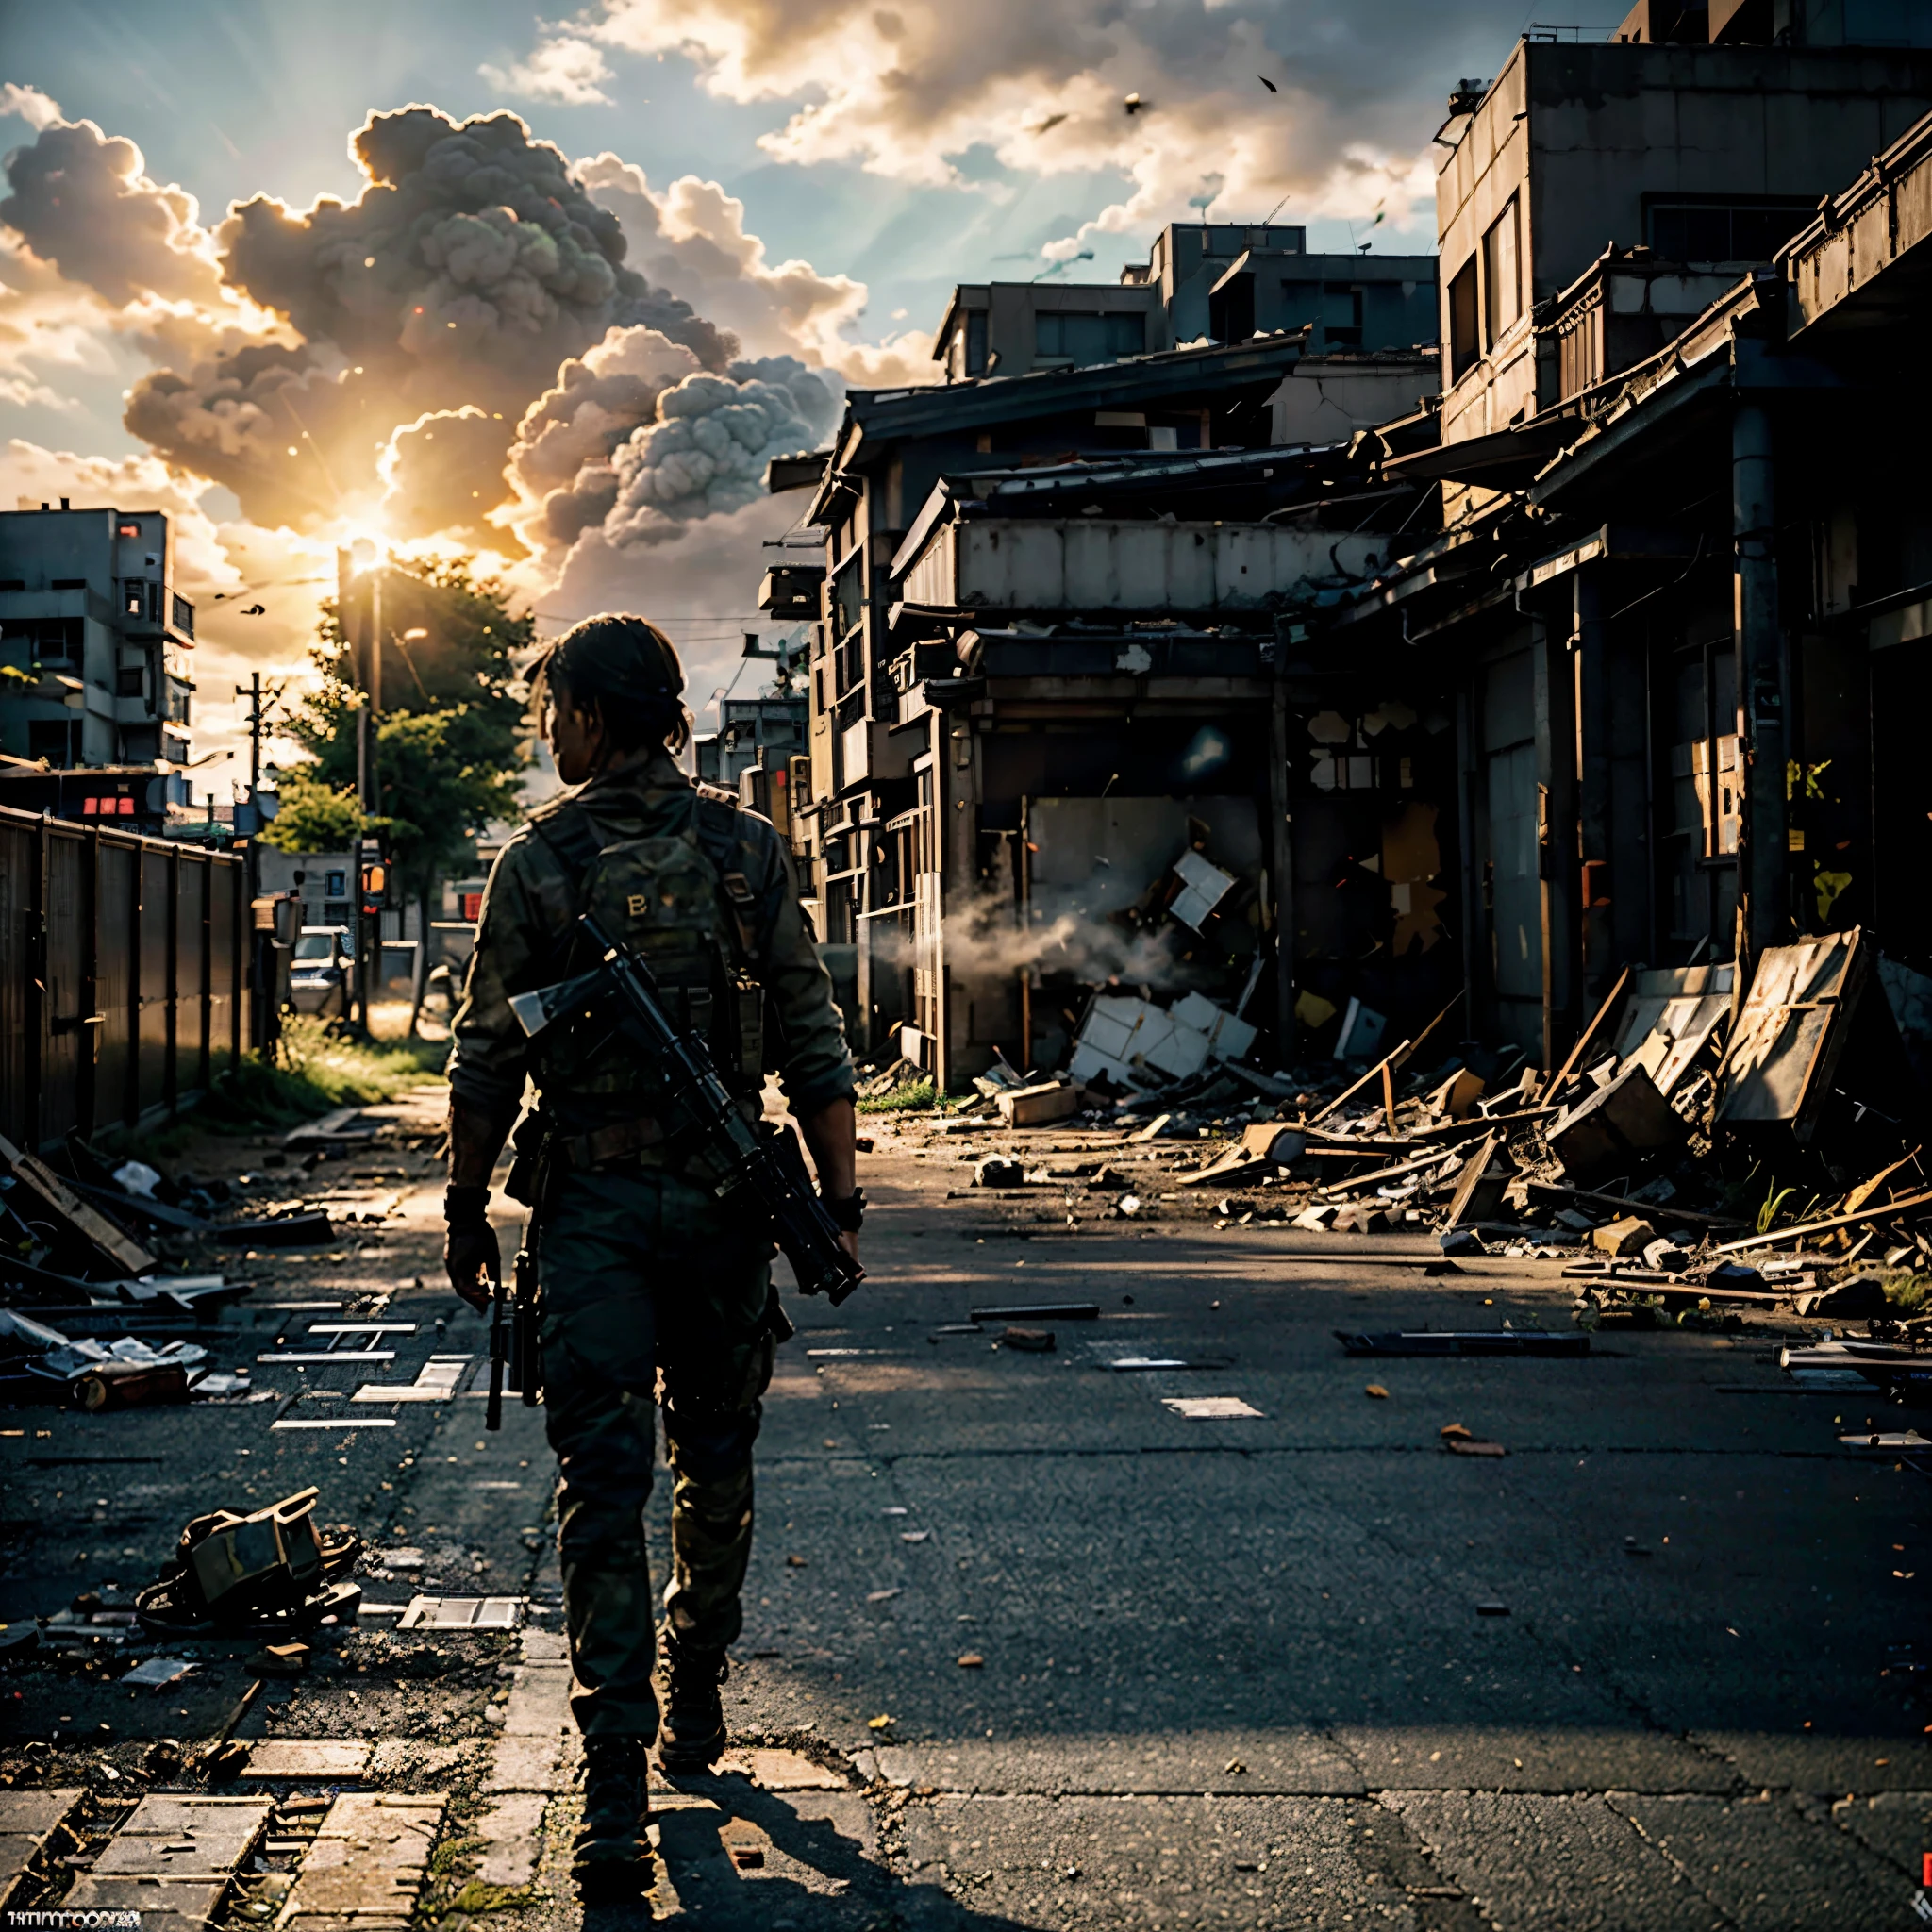 มุมมองระดับพื้นดิน, ความจริงเหนือระดับ, ทหารญี่ปุ่น, อายุ 30 ปี, ด้วยปืนกล, ท่าเดิน, พระอาทิตย์ขึ้น, ยืนอยู่บนถนนของโตเกียวซิตี้หลังวันสิ้นโลกที่ถูกทำลายและถูกทำลาย, สภาพแวดล้อม, การทำลายล้างทางสายตาอันทรงพลัง, สไตล์สุดท้ายของเรา, ภาพถ่ายกลางแจ้ง, ไฟภาพยนตร์, ชั่วโมงทอง, แฟนตาซี, เครื่องยนต์อันเรียล 5, การติดตามรังสี, ภาพที่ได้รับรางวัล, การถ่ายภาพชิ้นเอก, กำลังมาแรงบน Artstation, เอชดีอาร์, ยูเอชดี, 8k, โดยสุนัขจอมซน.